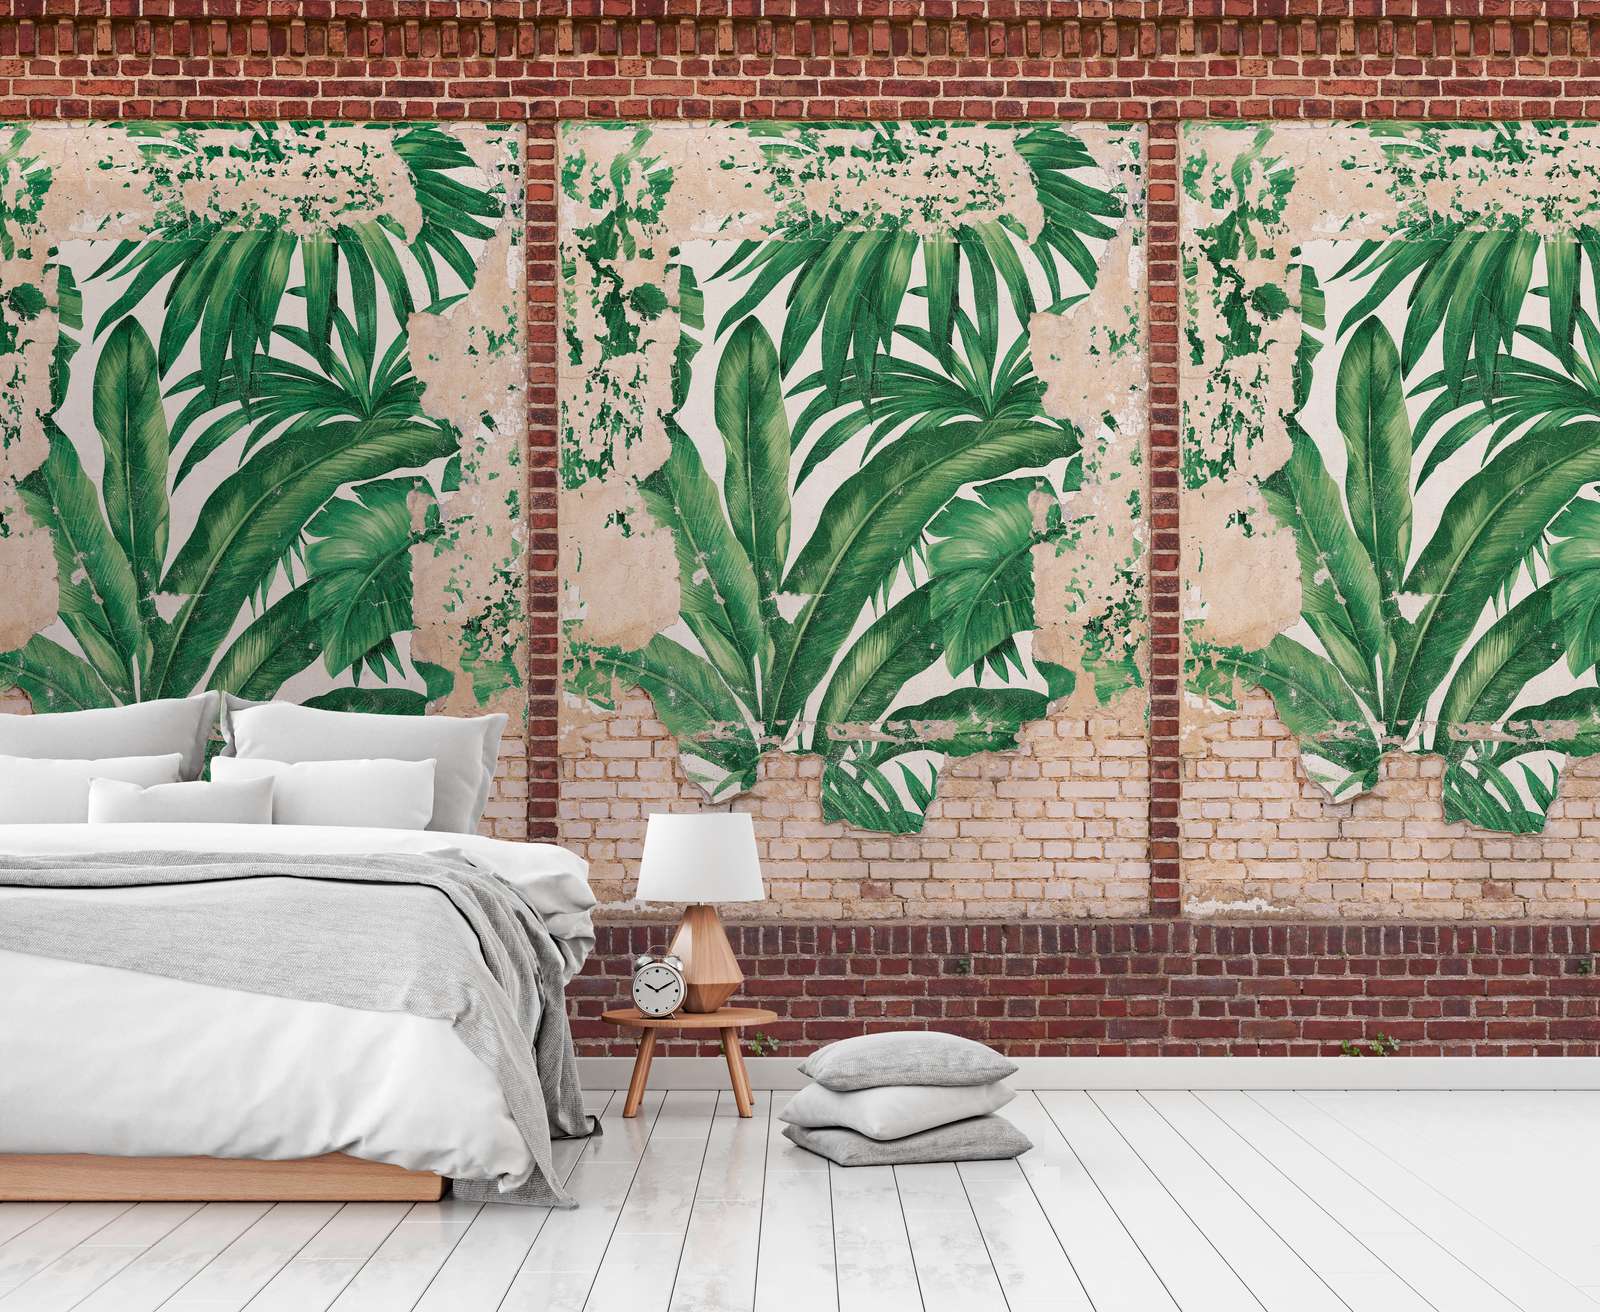             Papel pintado de hojas de palmera sobre pared con aspecto de ladrillo - Marrón, Beige, Rojo
        